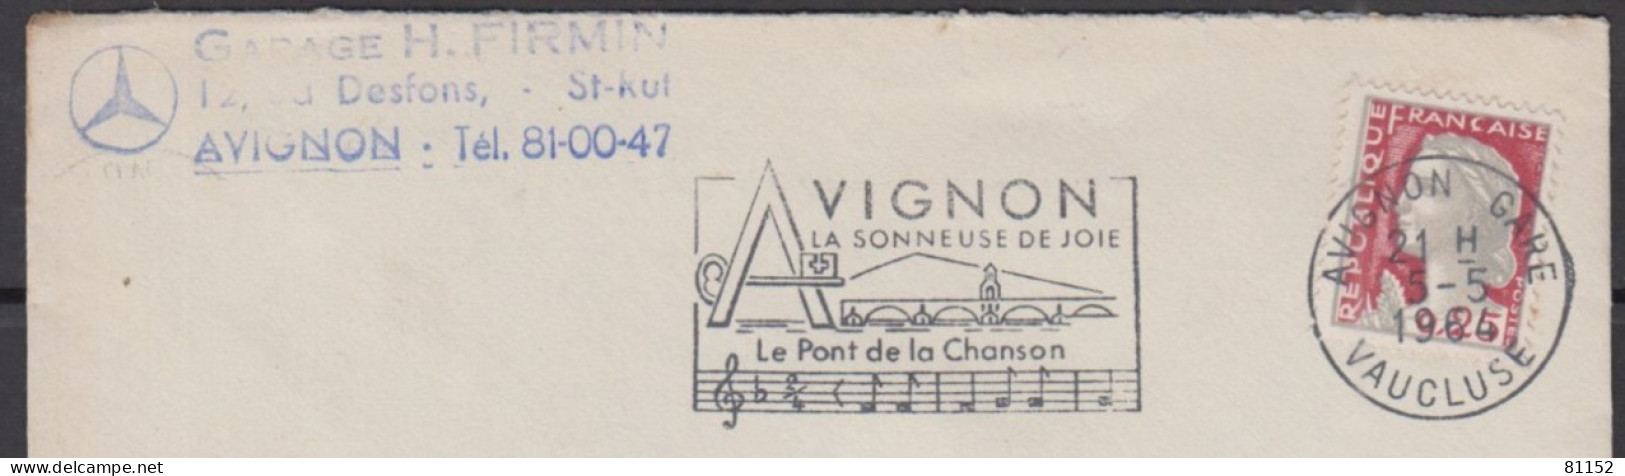 Mne De DECARIS 25c  + Sécap   Sur Lettre Pub " Blason MERCEDES " De  AVIGNON  Le 5 5 1964  Pour AVIGNON - 1960 Marianne De Decaris